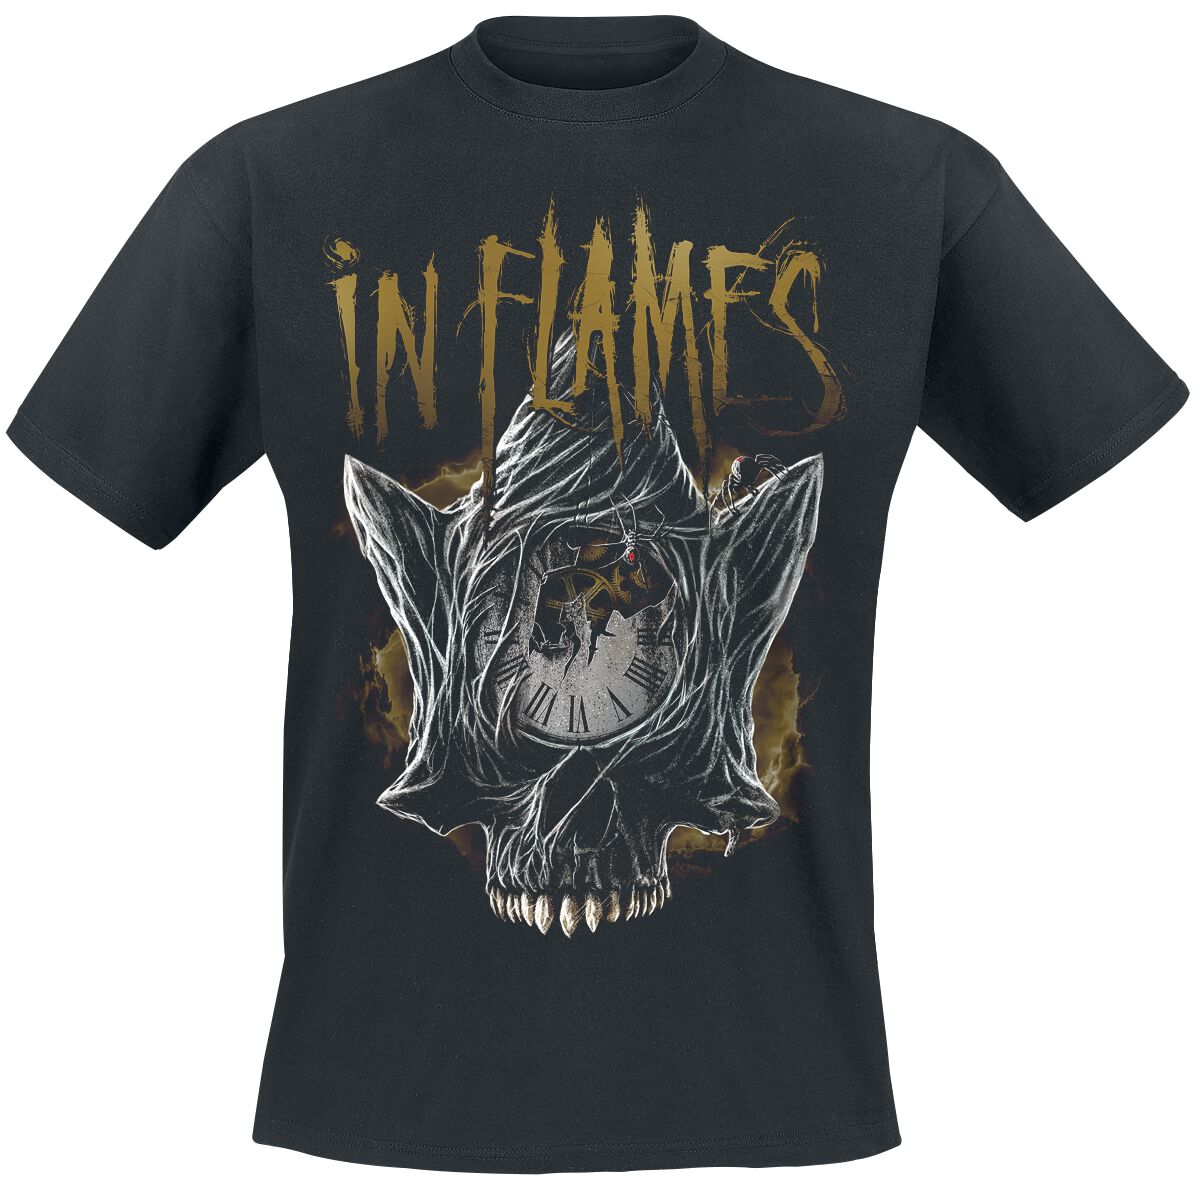 In Flames T-Shirt - Foregone Skull - S bis 3XL - für Männer - Größe 3XL - schwarz  - Lizenziertes Merchandise!